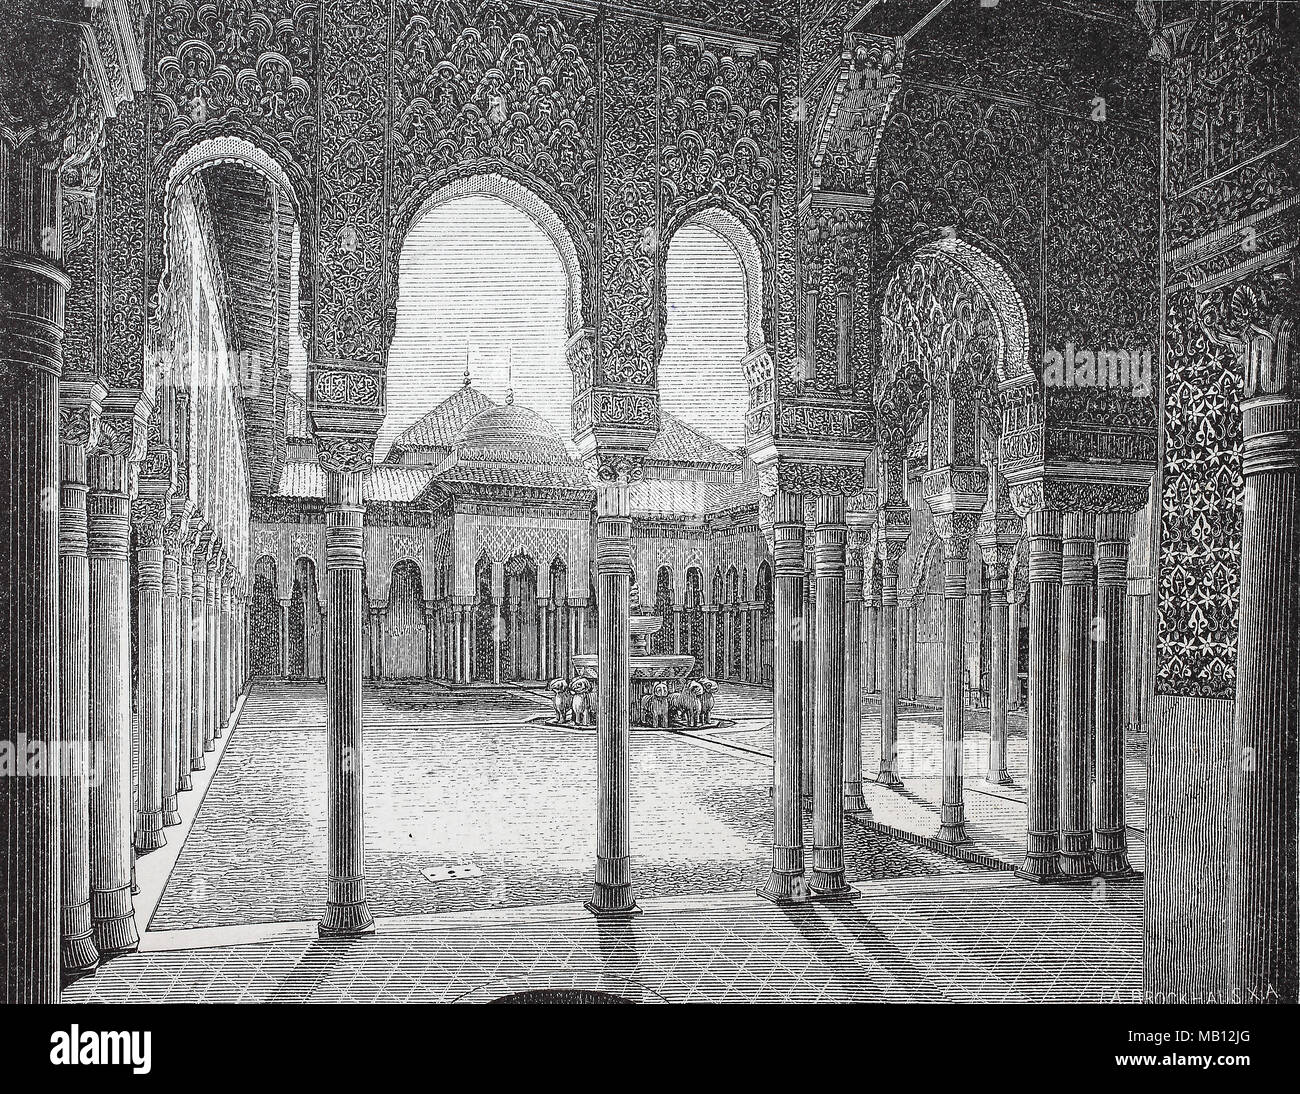 LÃ¶wenhof und Saal der Abencerragen in der Alhambra, Spanien, digital improved reproduction of an original print from the year 1895 Stock Photo